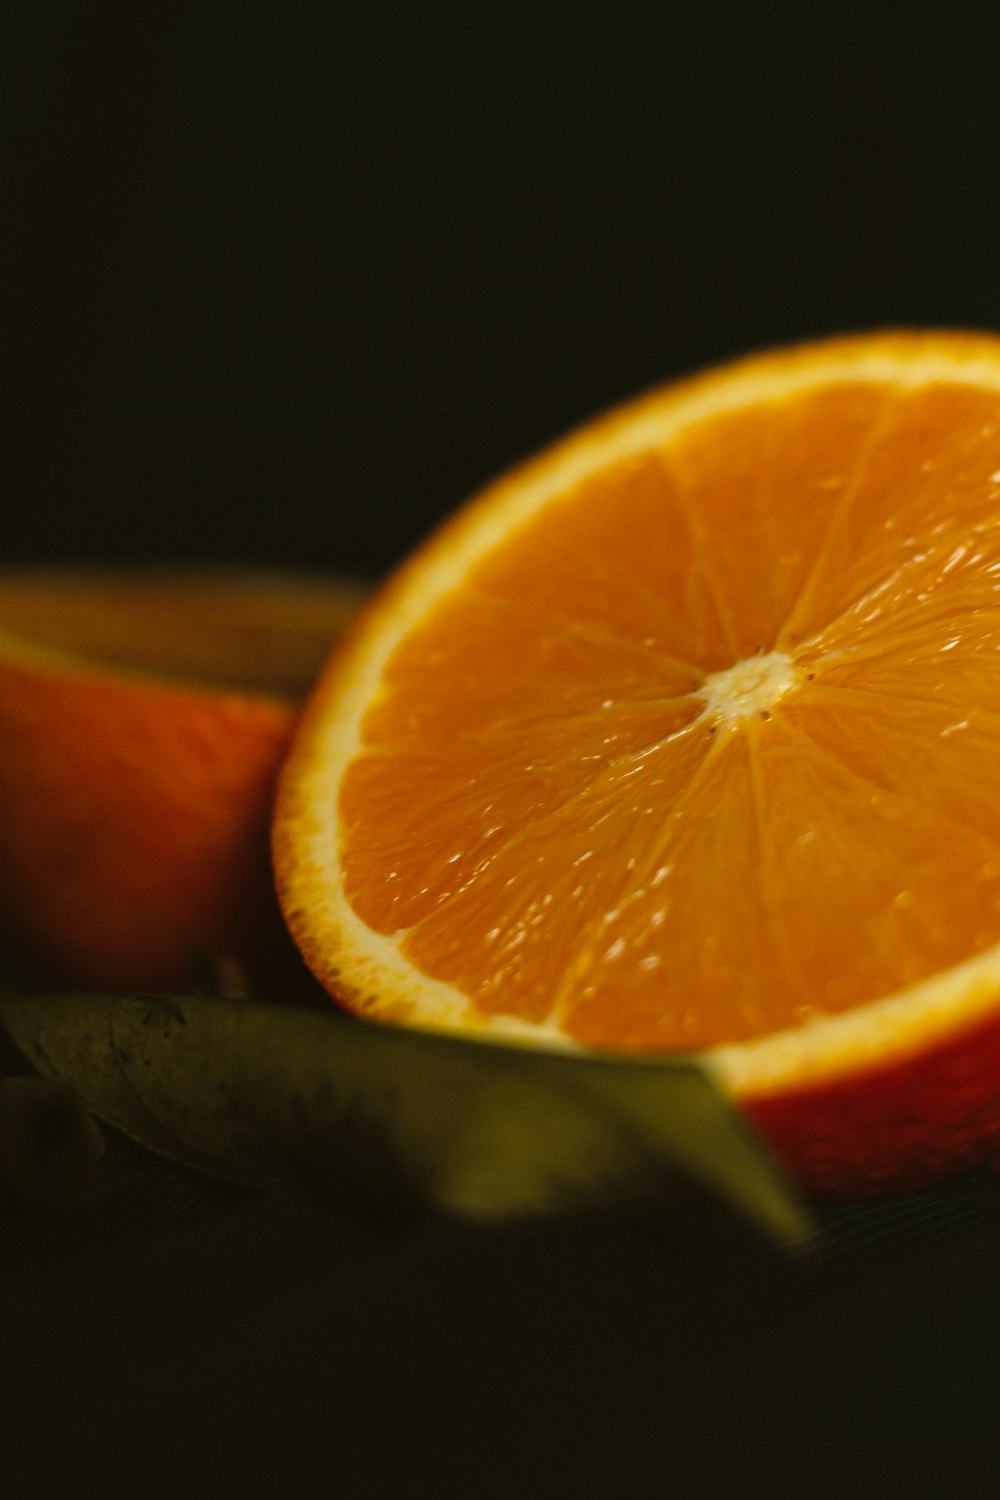 sliced orange fruit in black background